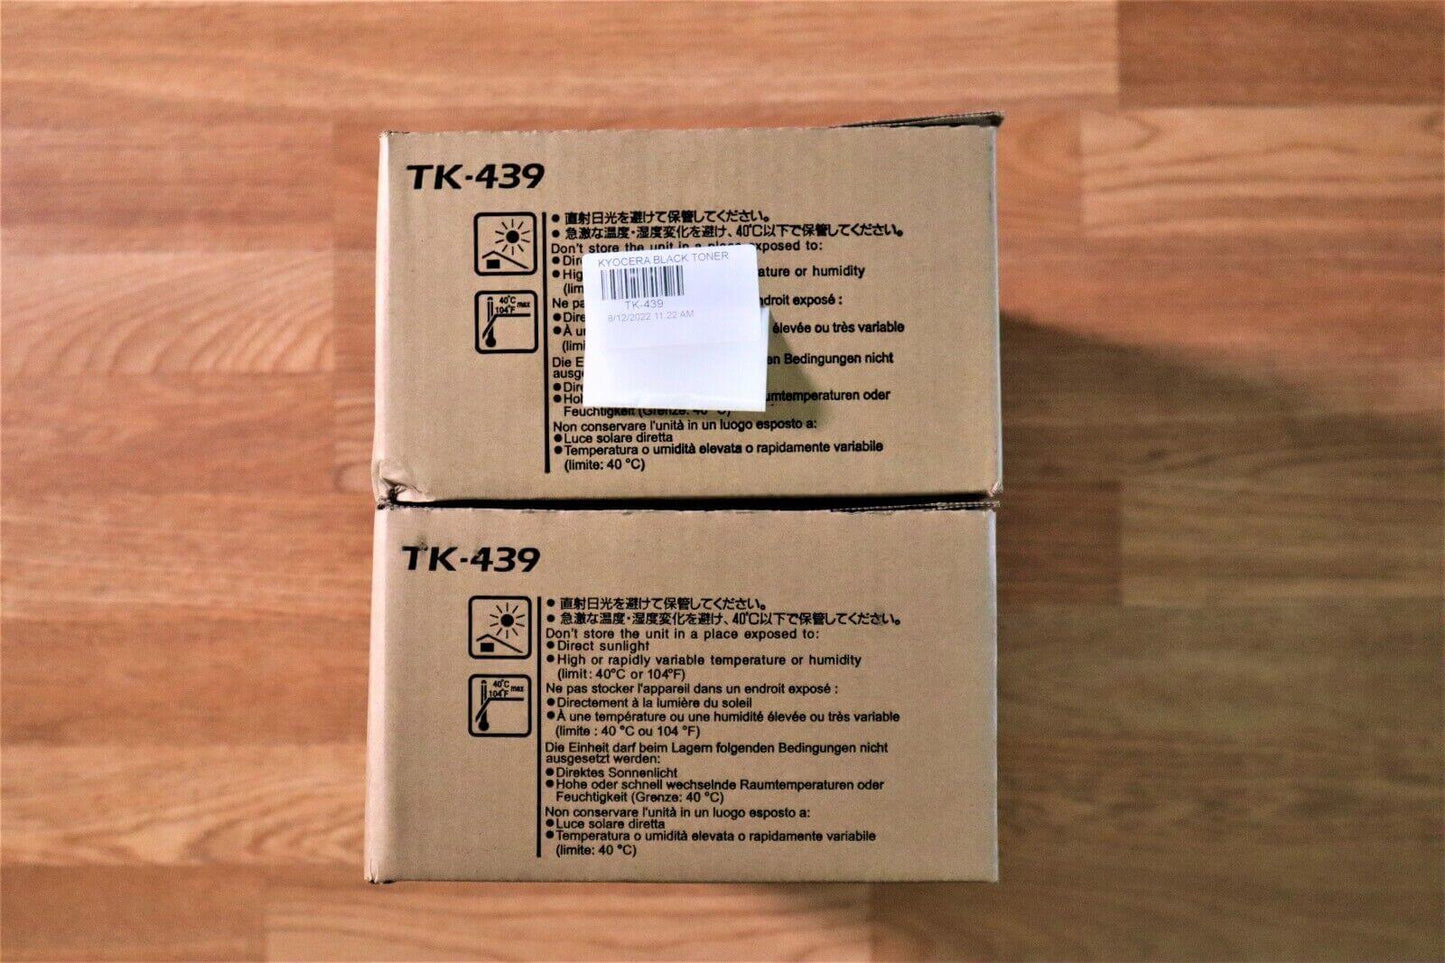 Genuine Kyocera TK-439 Black Toner Kit for CS221/CS181/CS180 Same Day Shipping!! - copier-clearance-center